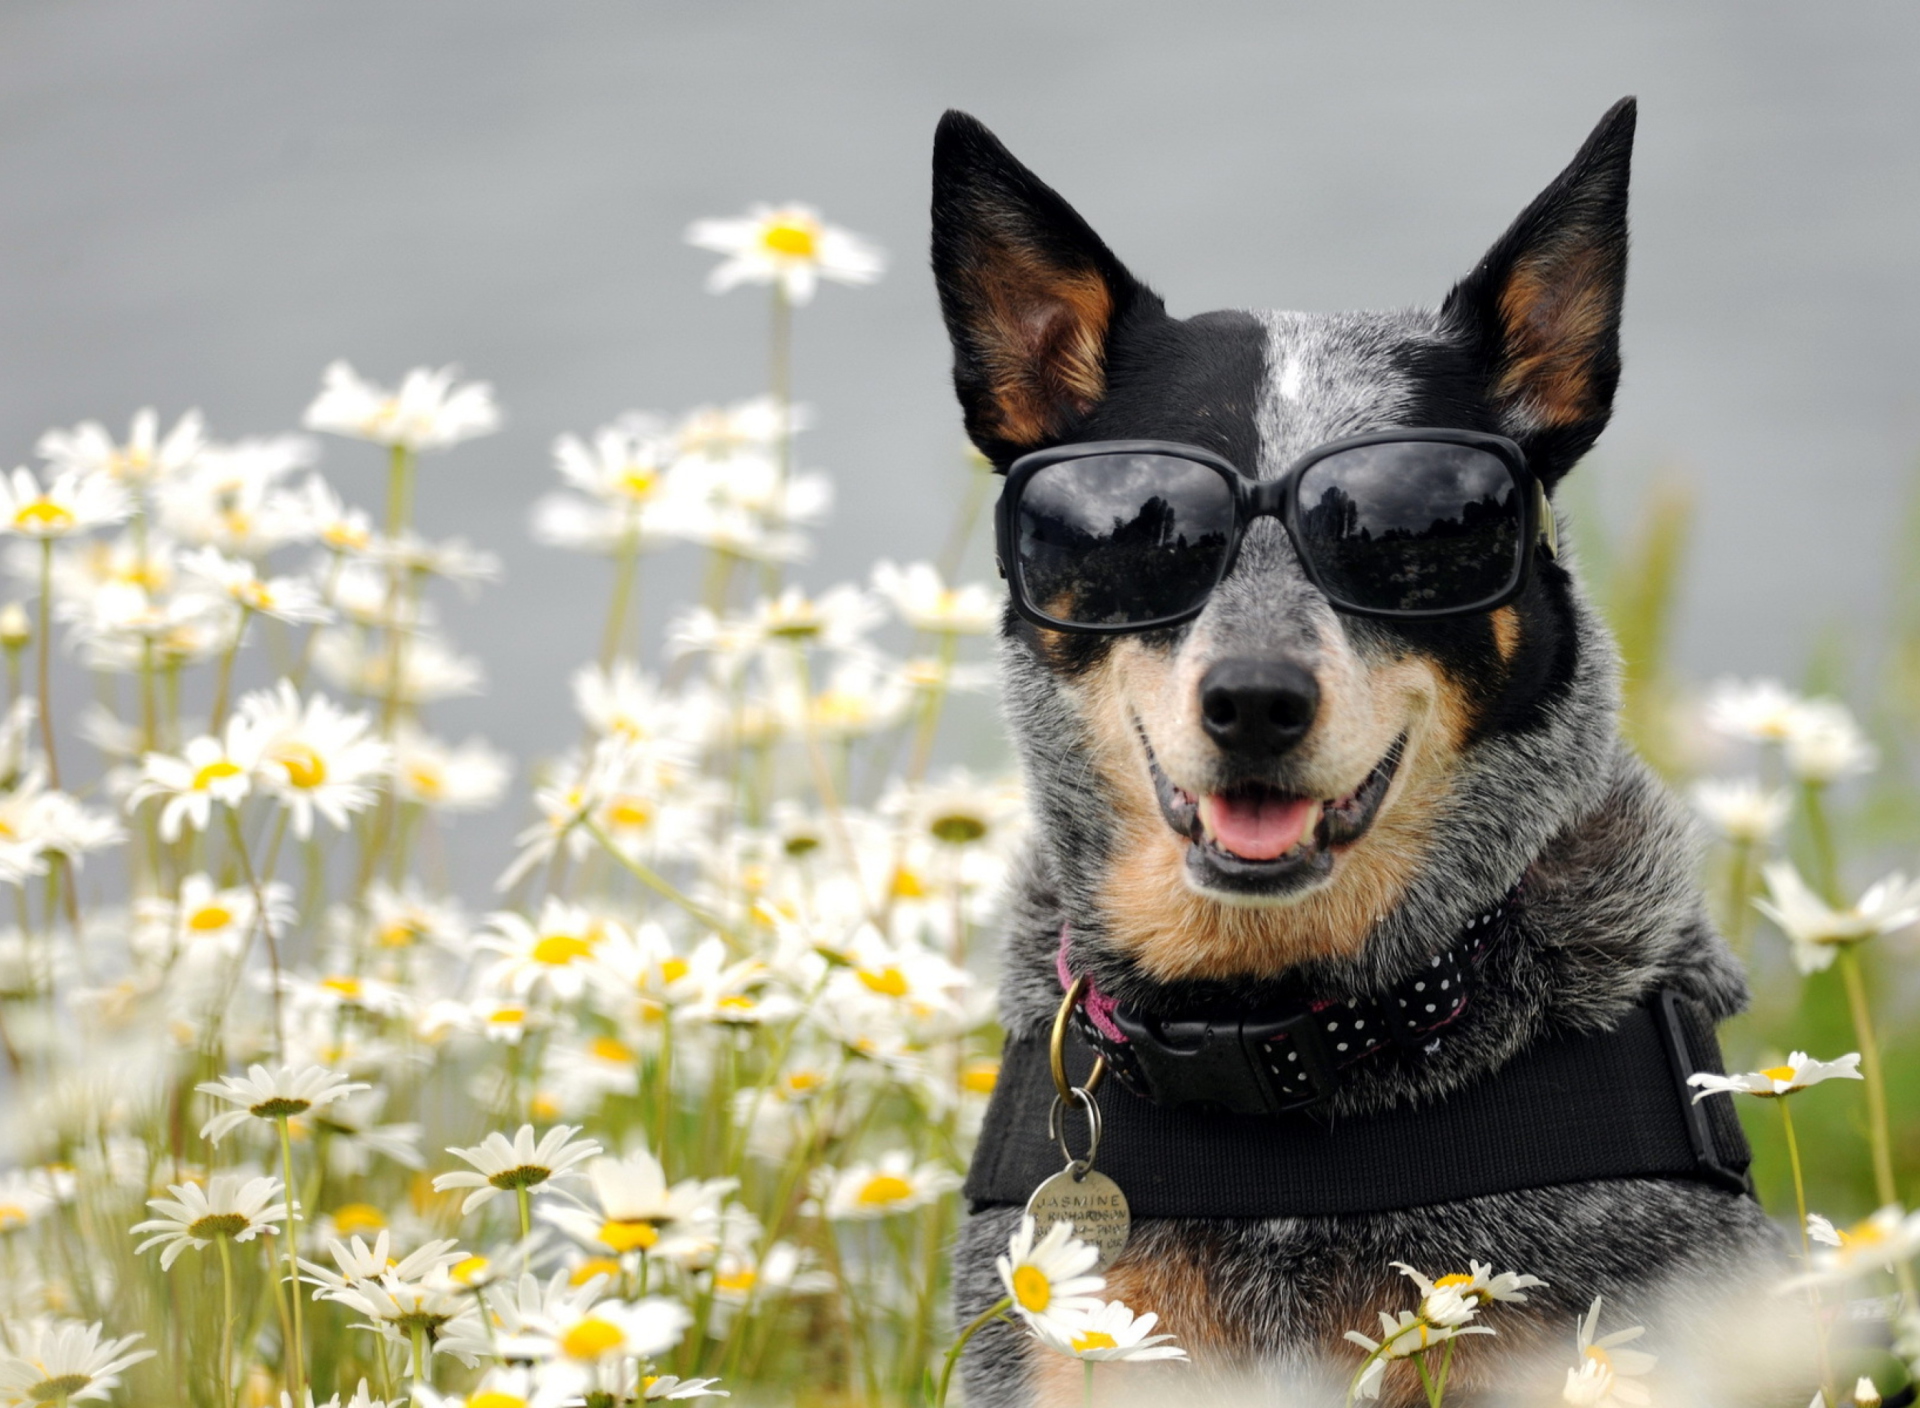 Обои Dog, Sunglasses And Daisies 1920x1408